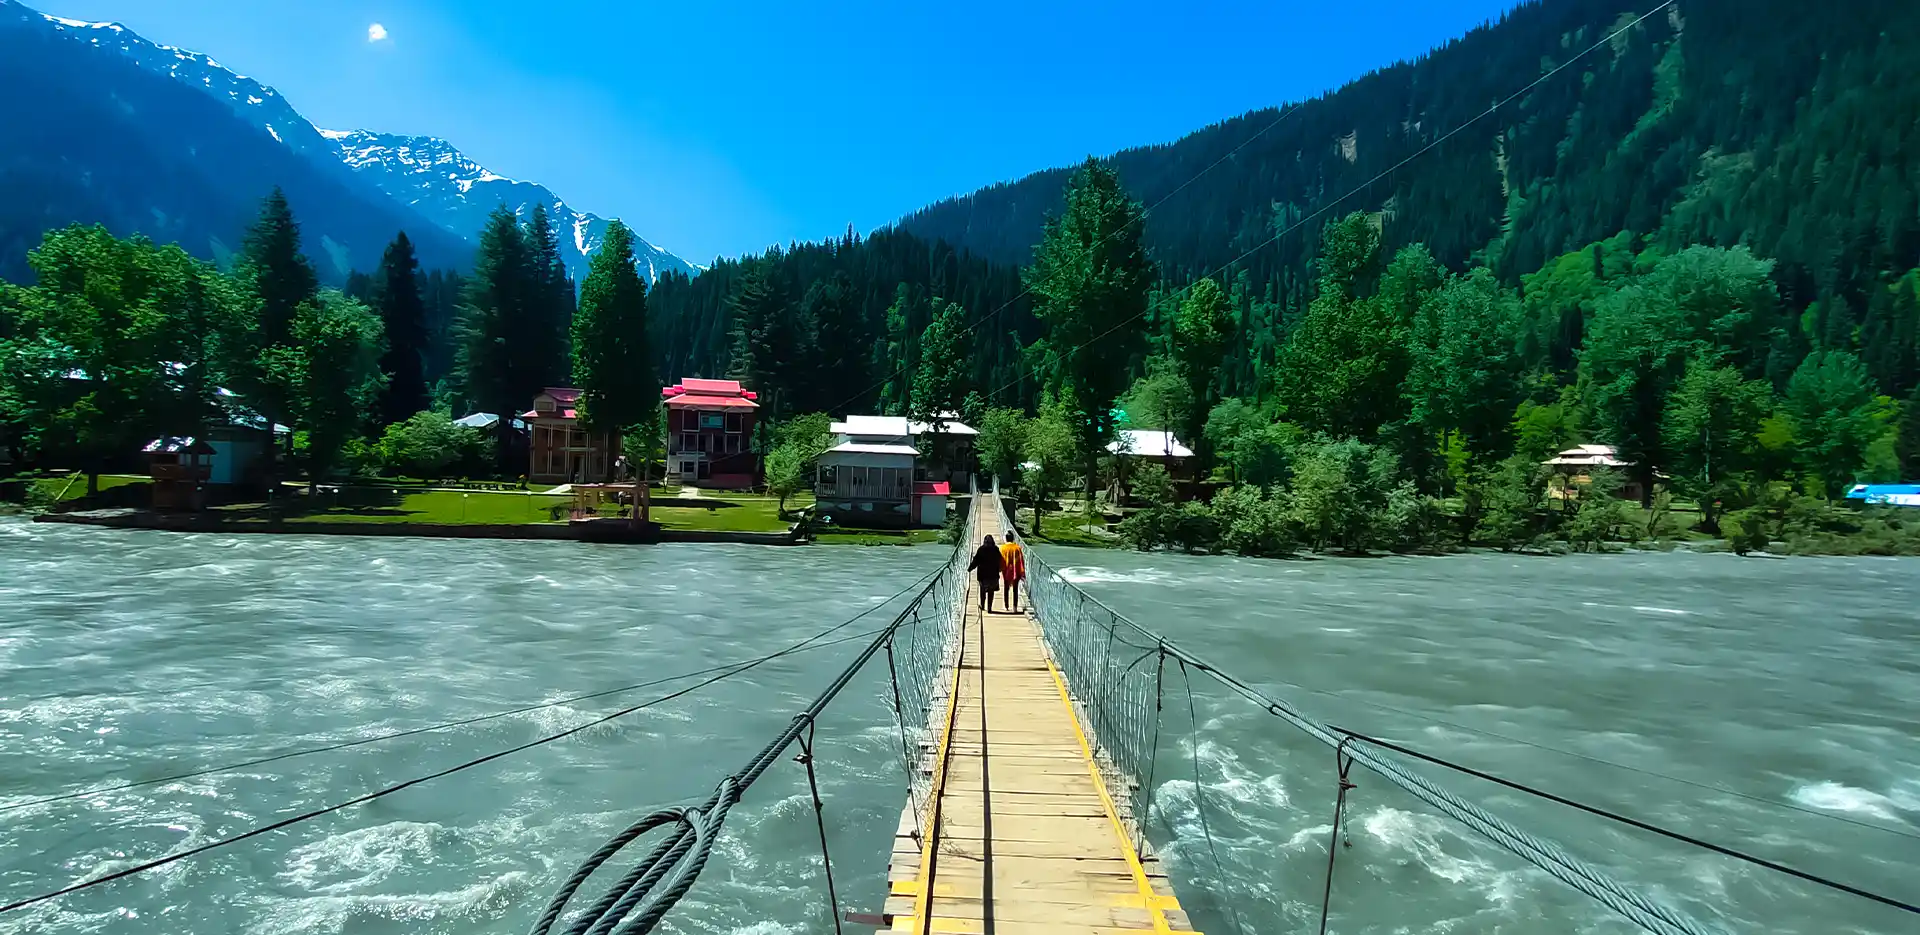 Gurez an Emerging Tourist Destination in Kashmir